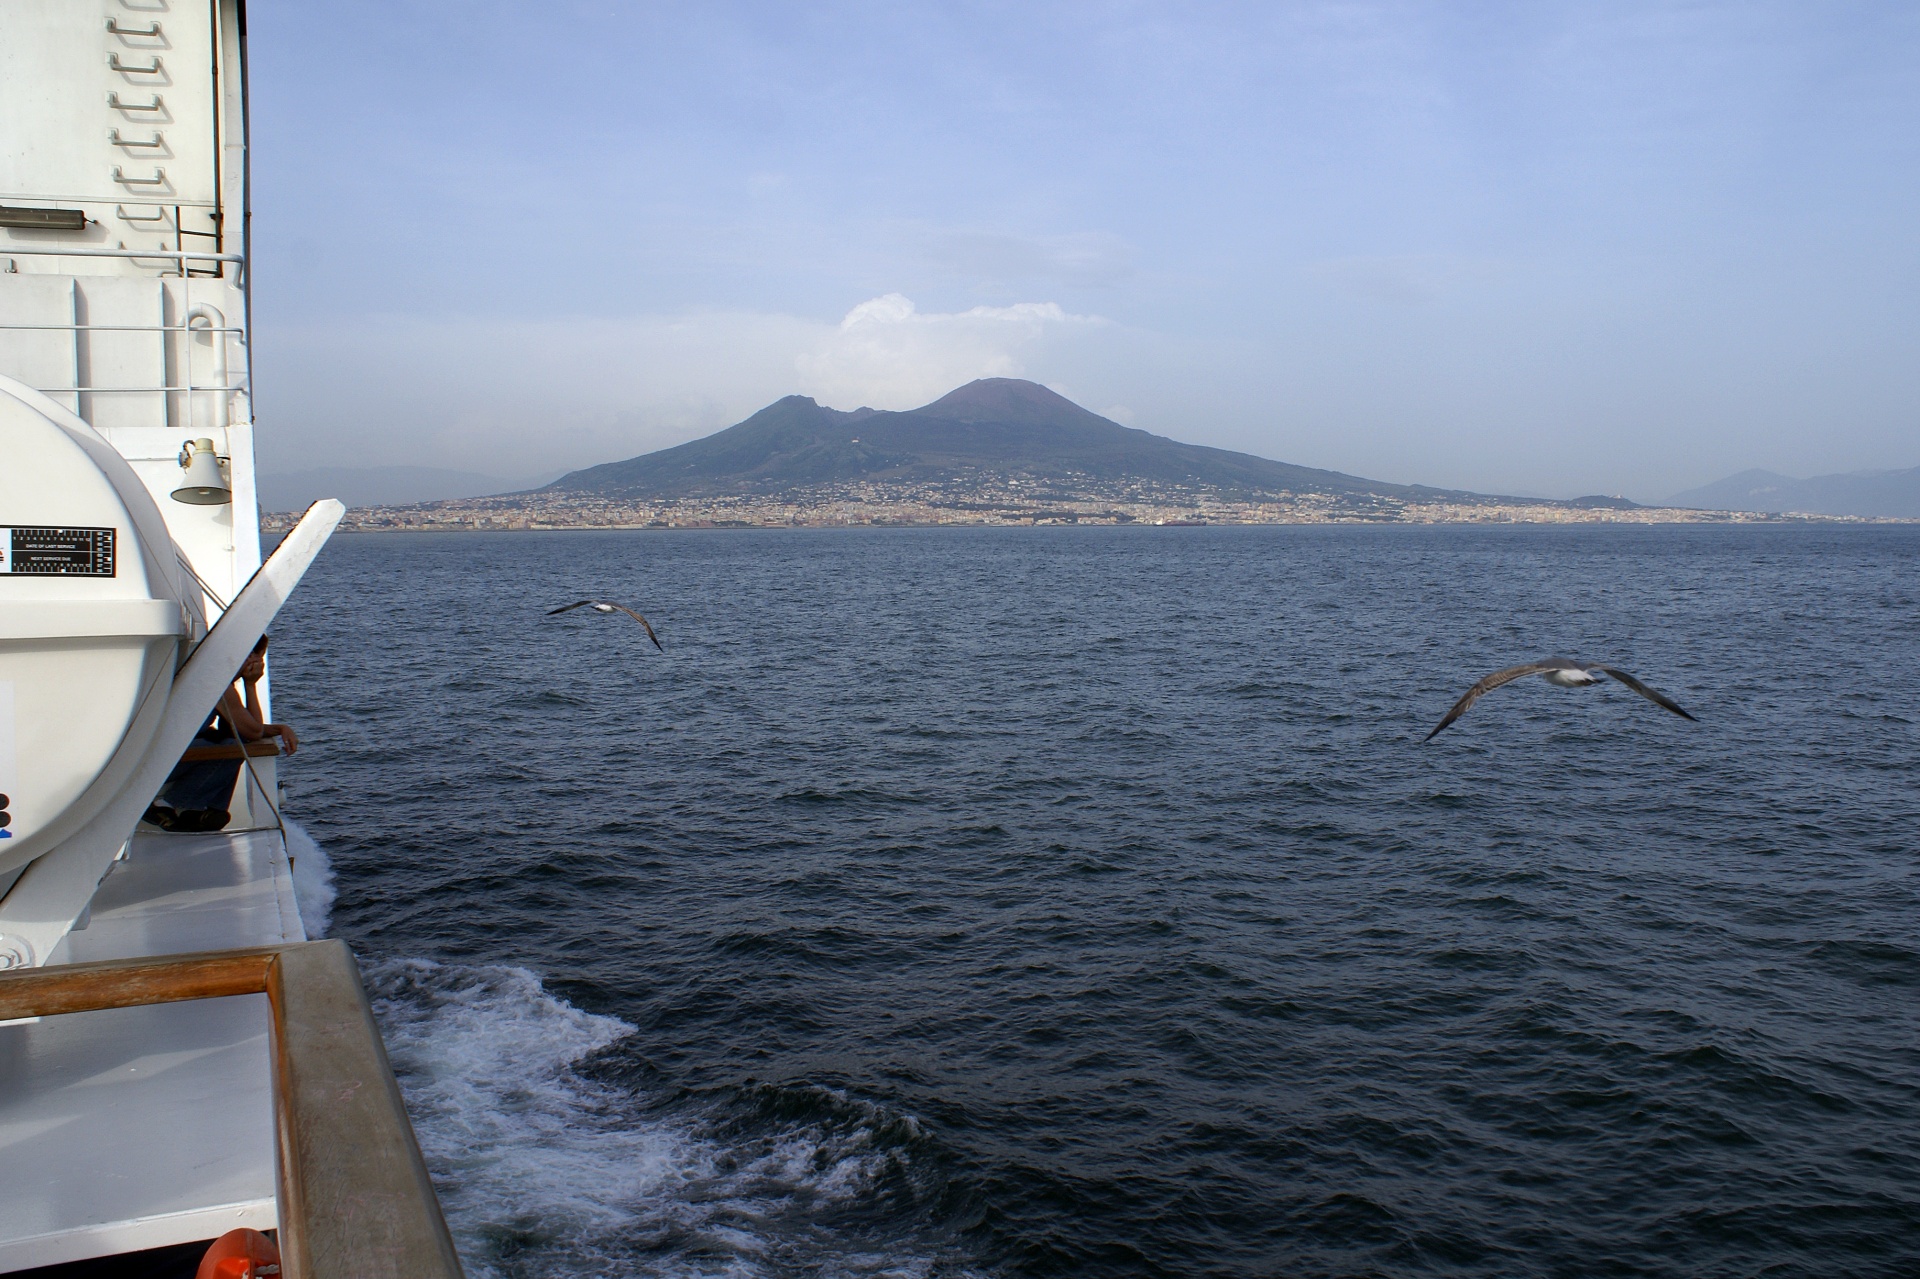 Vesuvius Seen From The Sea